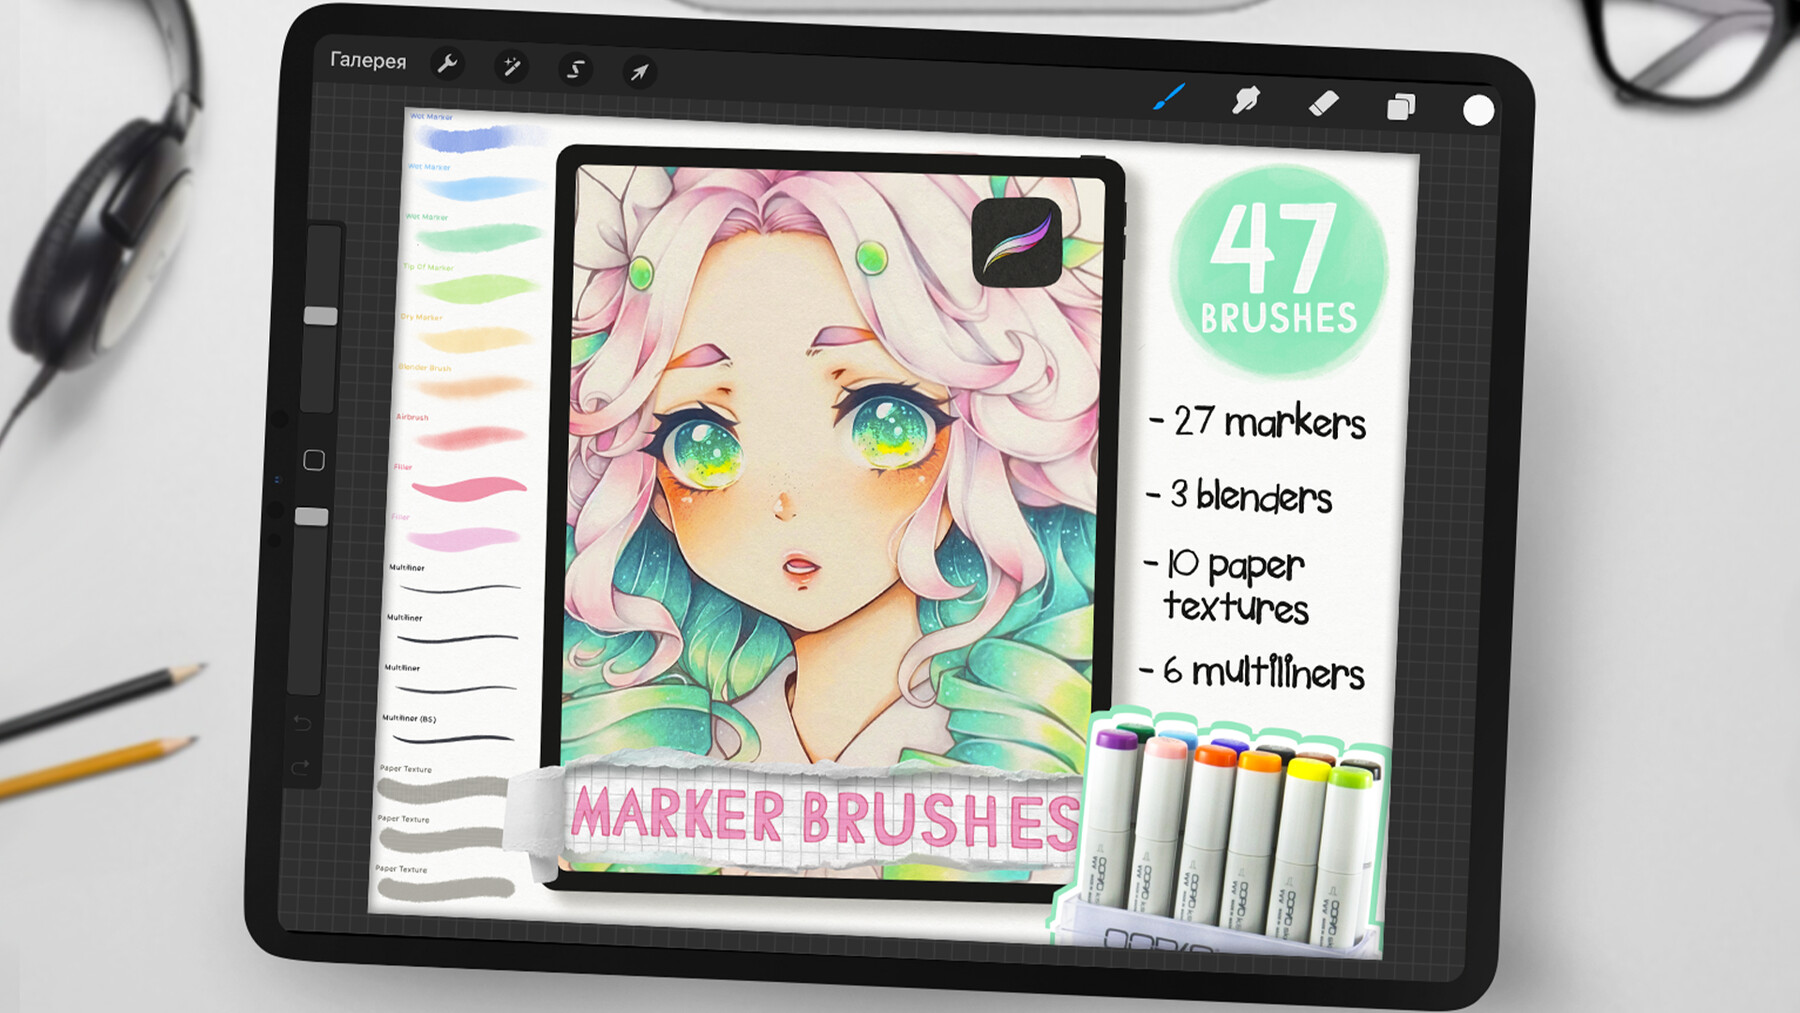 40 Copic Inspired Marker Brush Set Airbrush, Multiliner, Blender